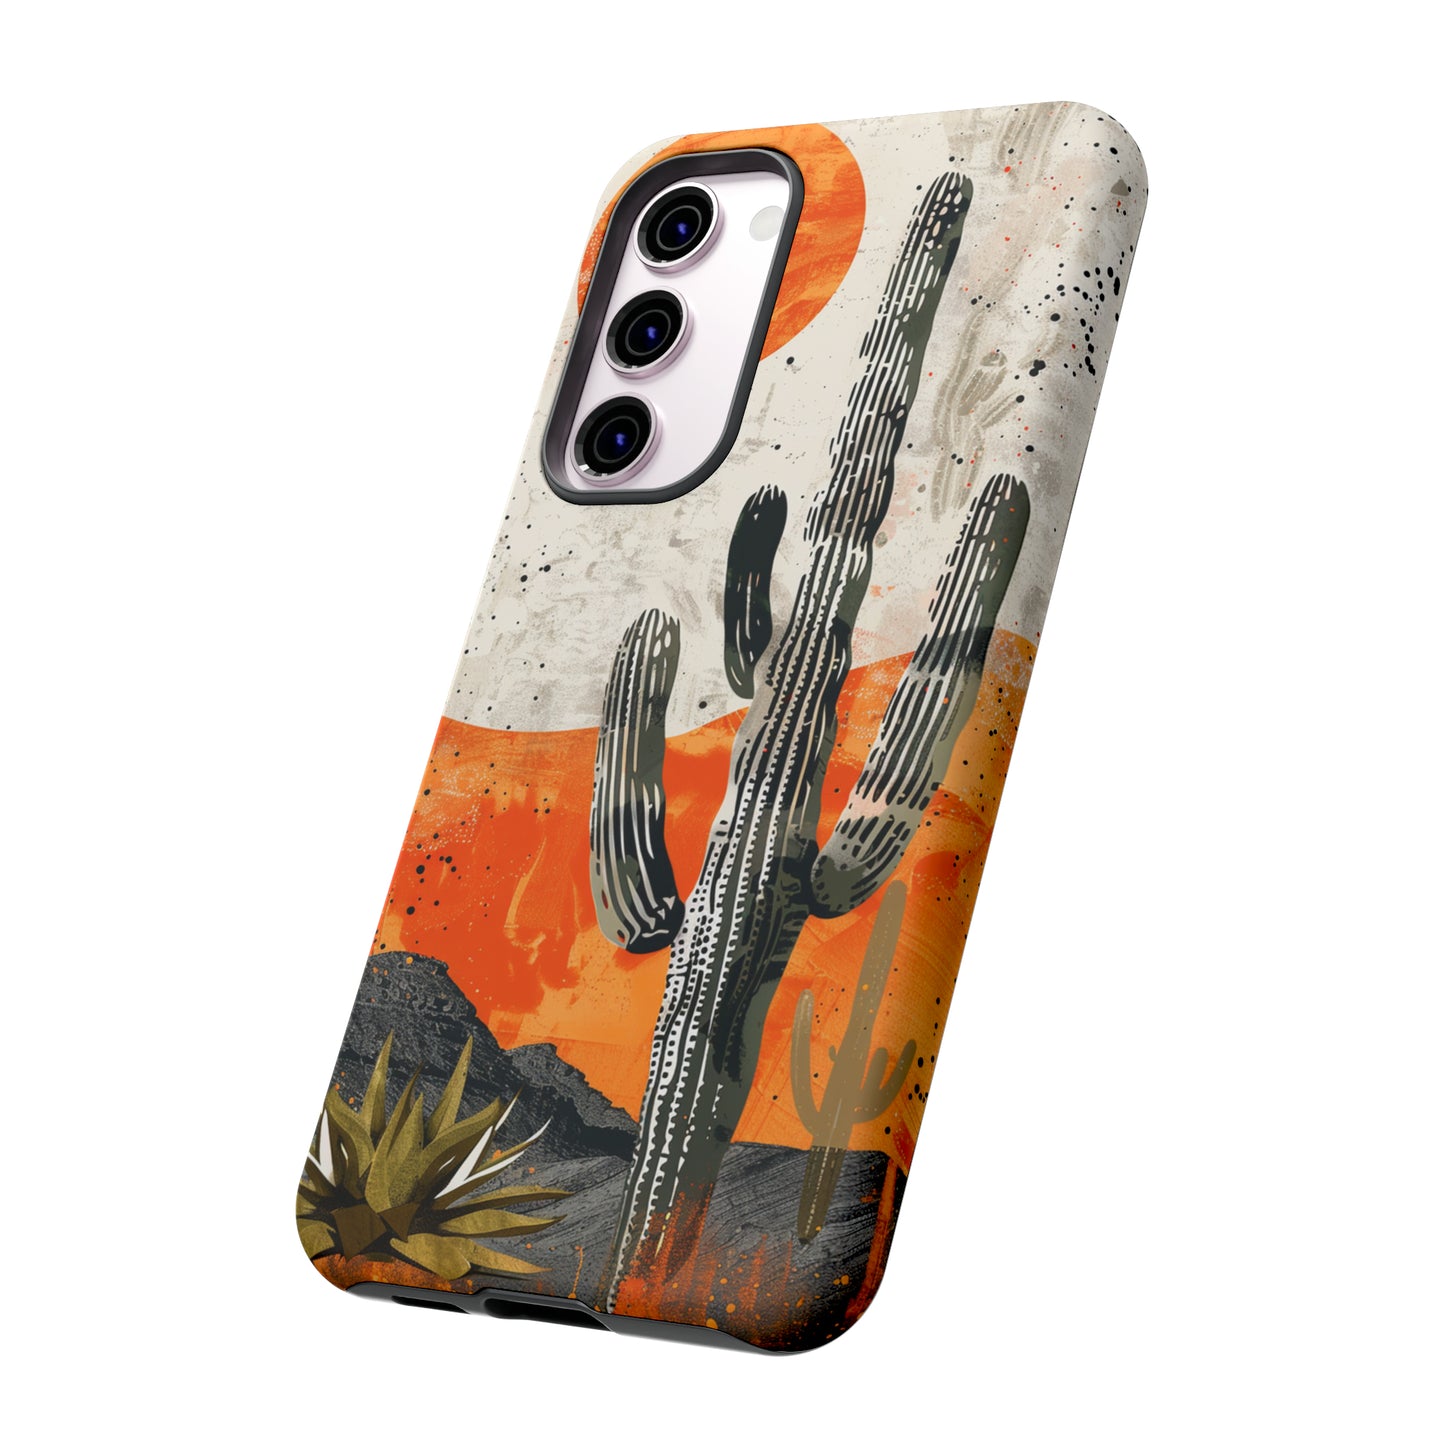 Desert Cactus Western iPhone Case